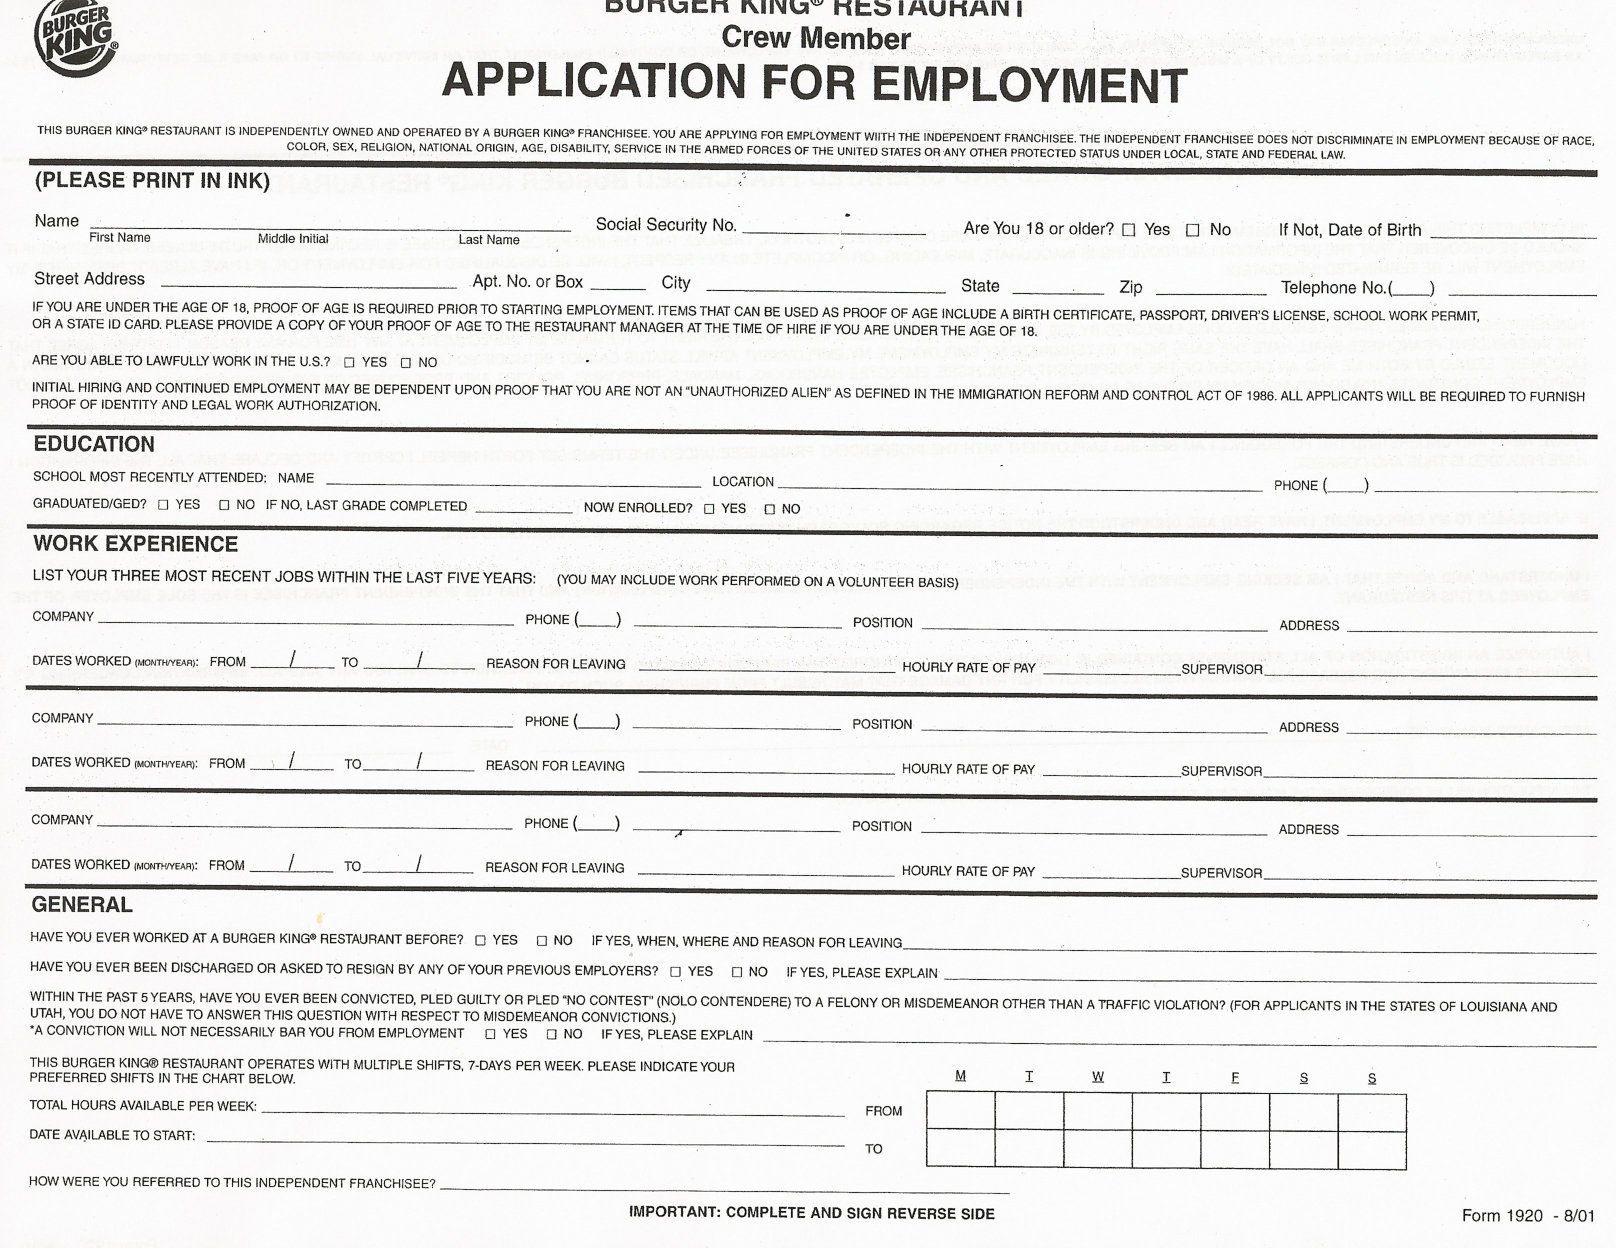 Job Application Forms To Print | Printable Job Application Forms - Free Printable Job Application Template